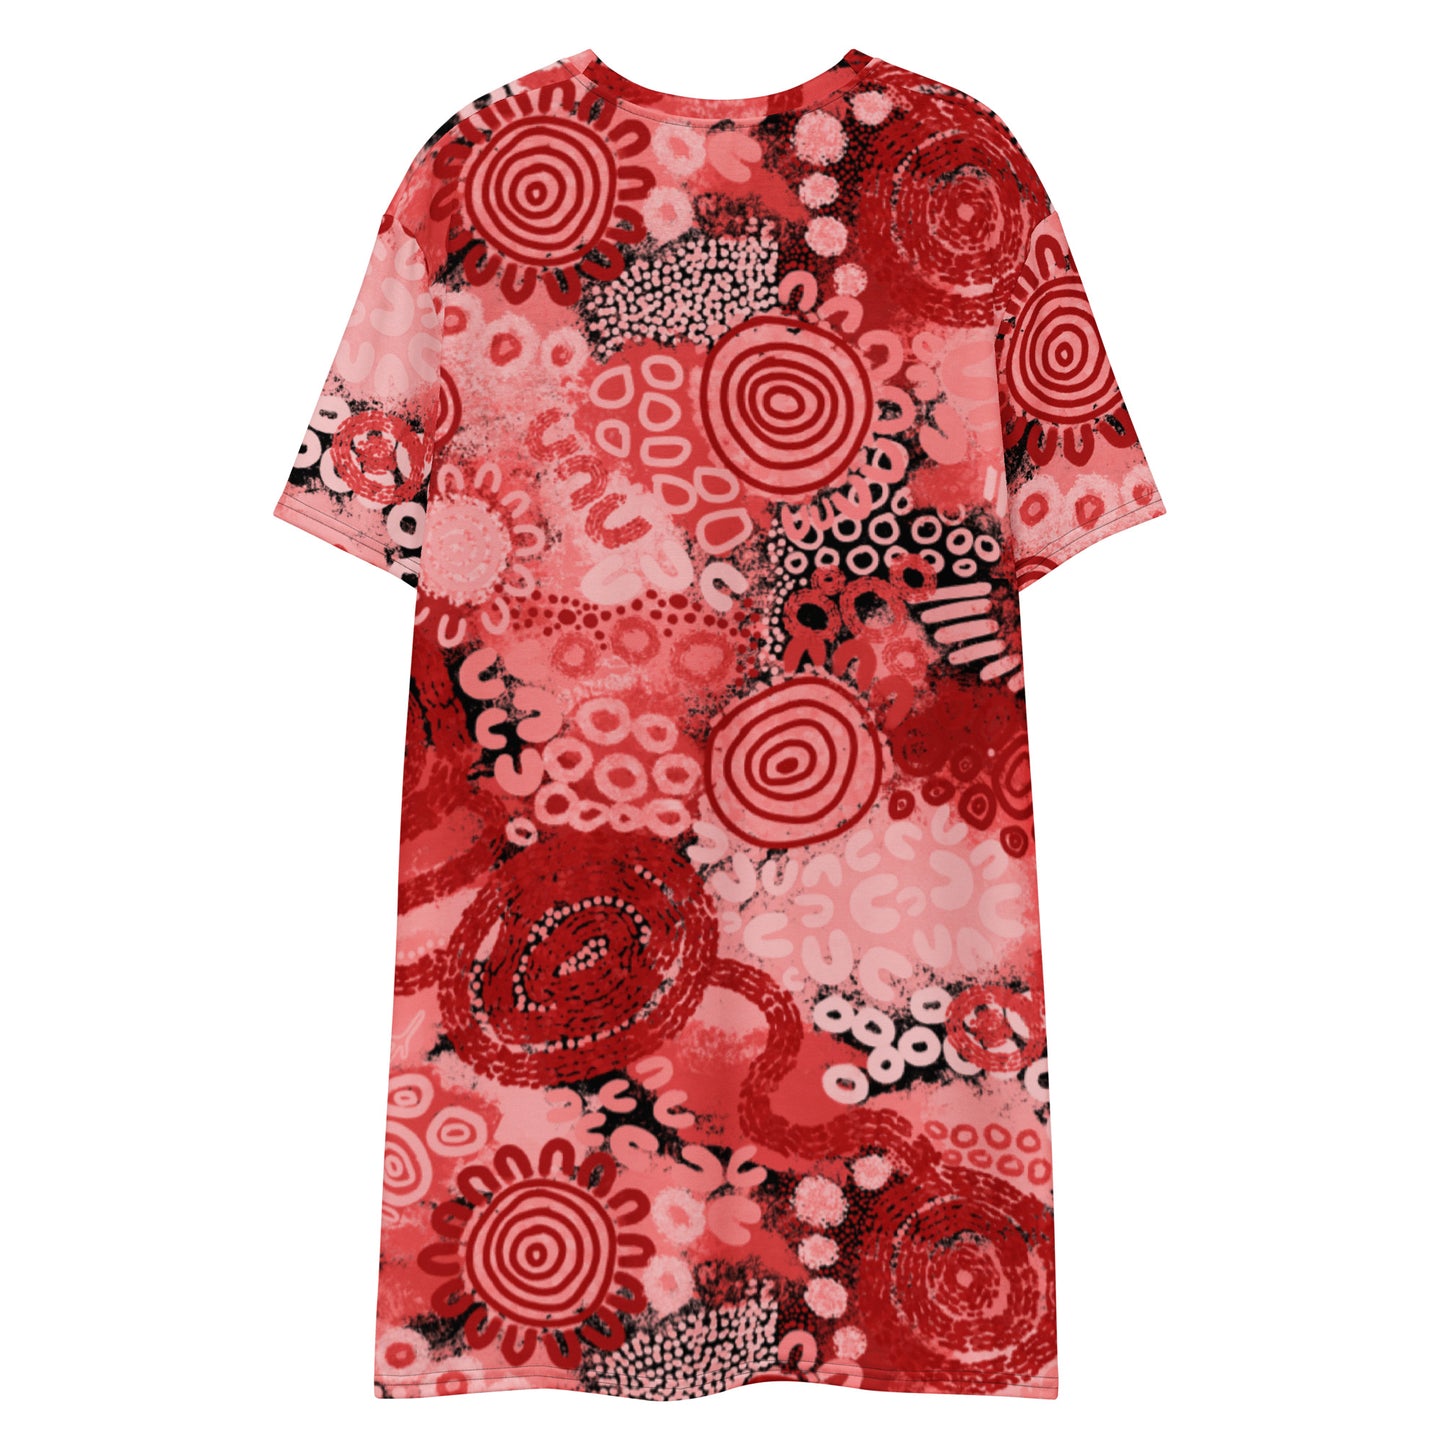 Aboriginal Art Print | Red Ochre | T-shirt Dress